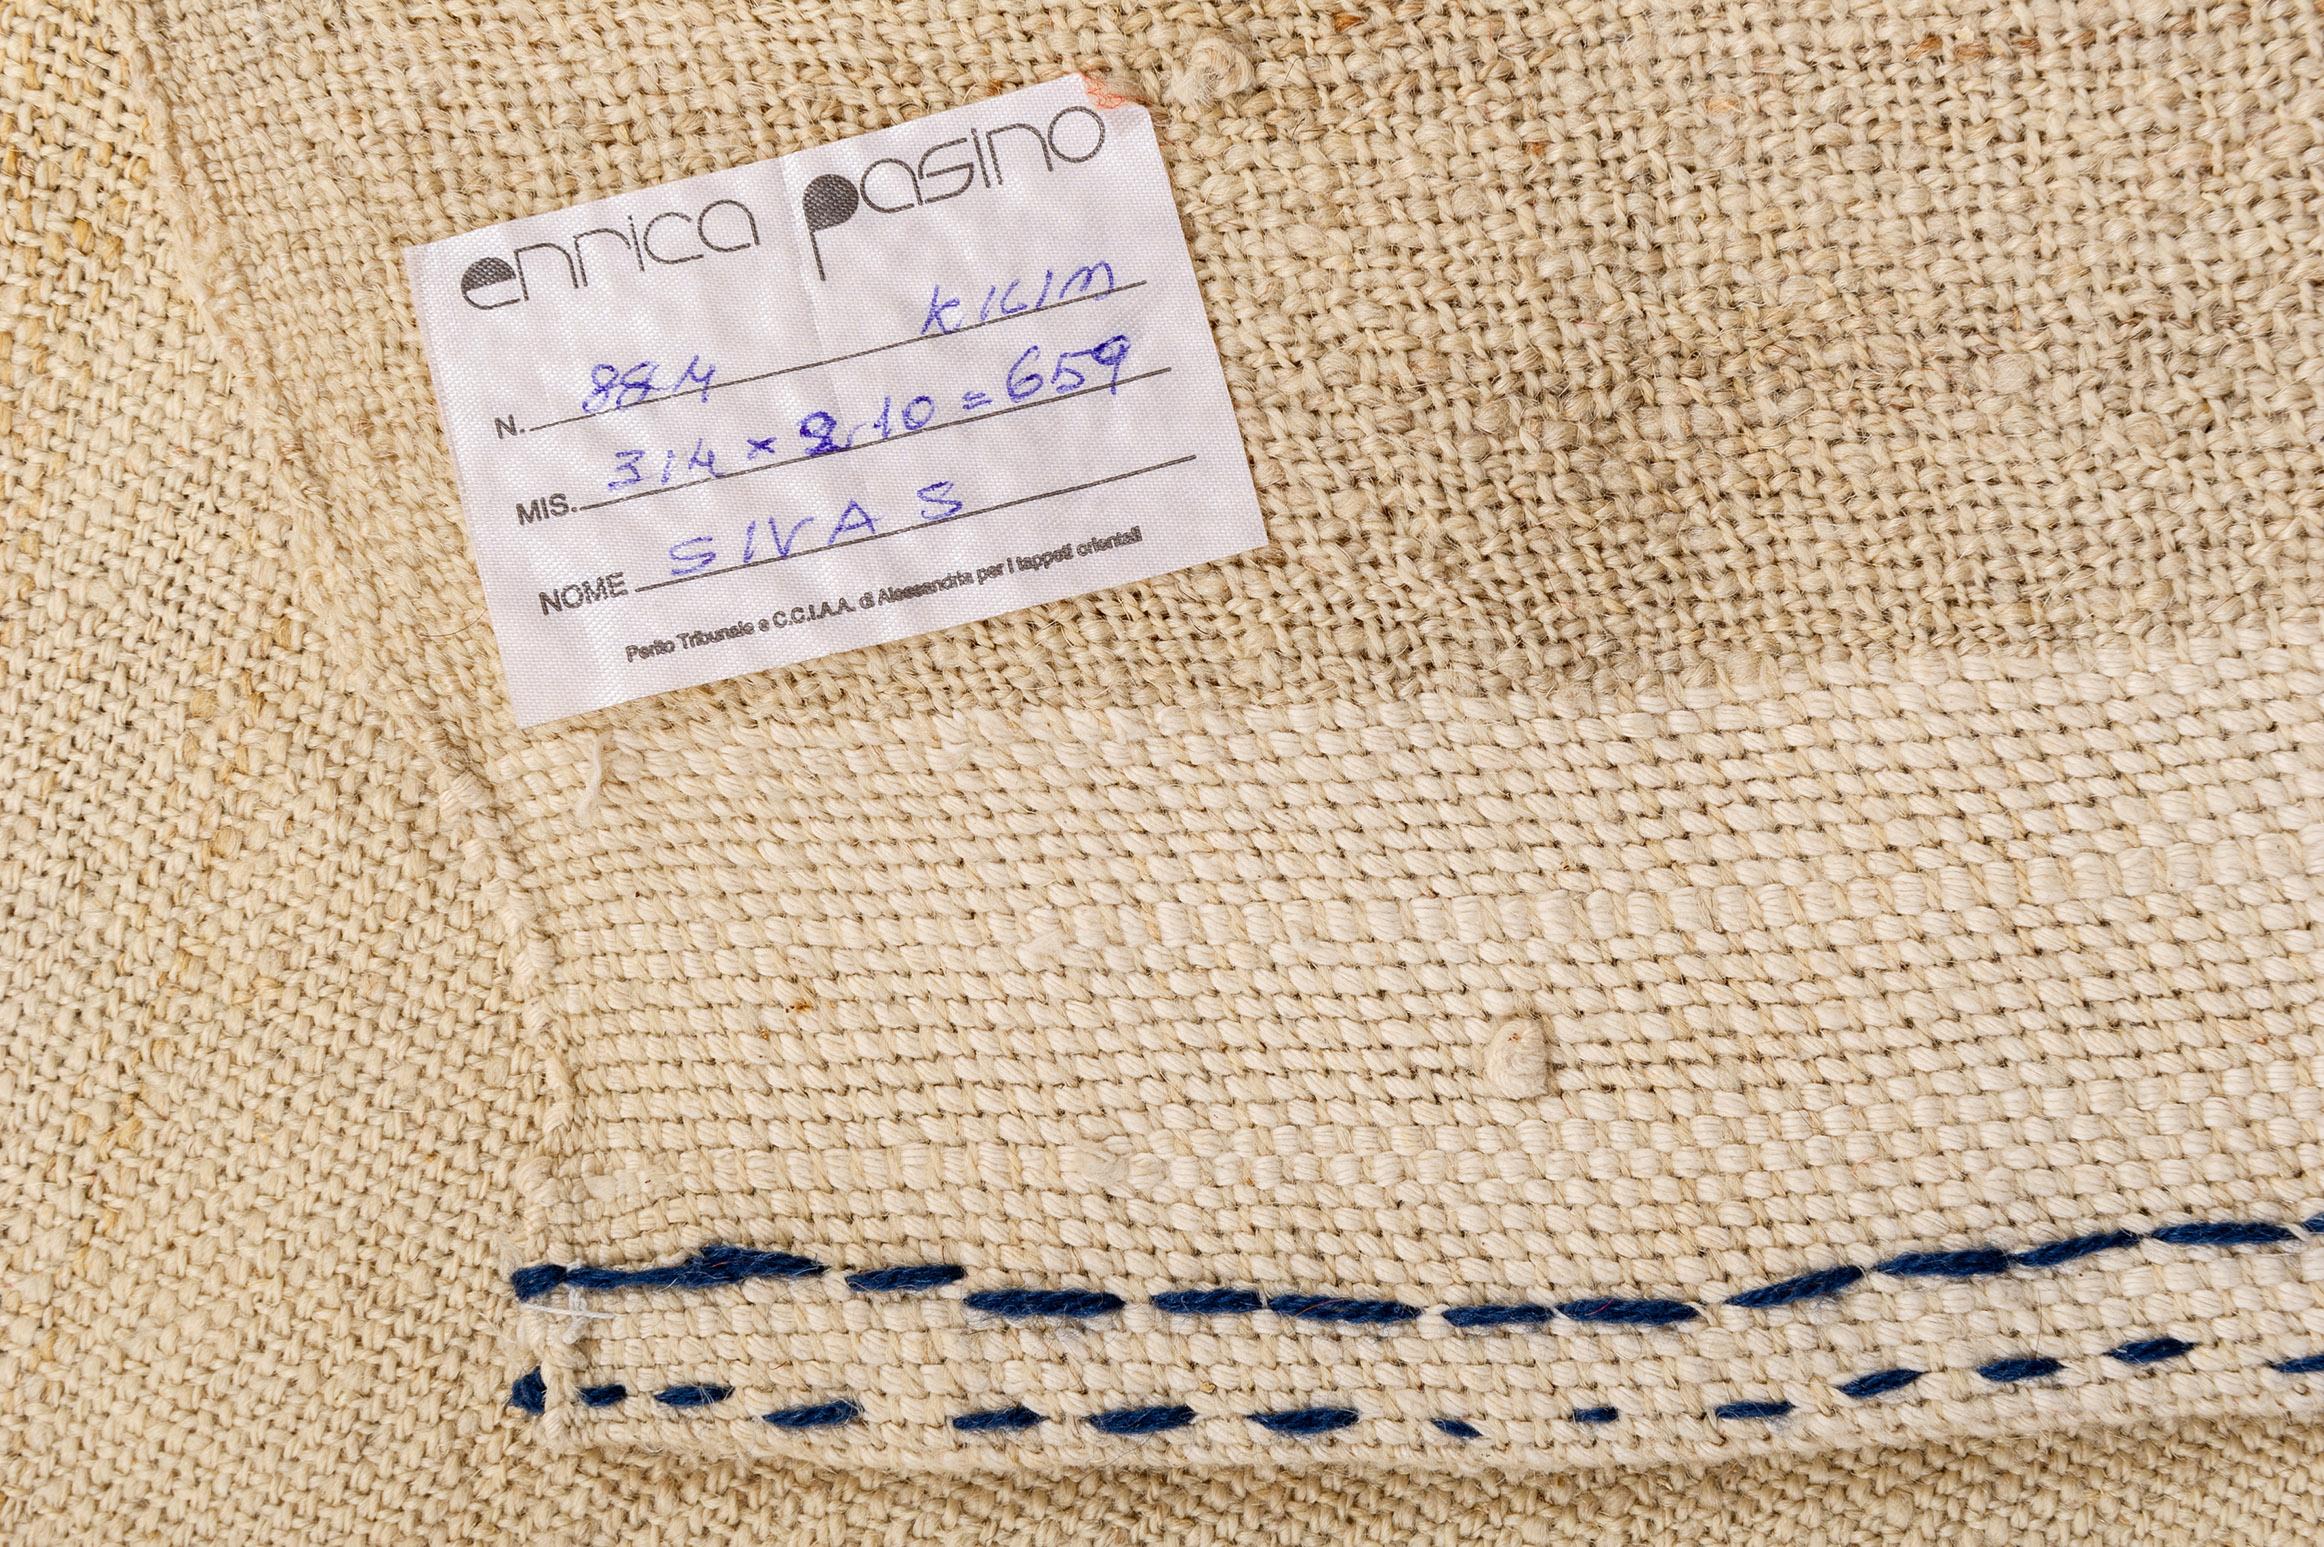 nr.884 -  Wolle in natürlicher Farbe für dieses Vintage-Kelim-Gewebe.
Es ist nicht leicht, sie im Vintage-Stil zu finden: Dieses Exemplar wurde in der Nähe von Sivas gefunden.
IDEA: Legen Sie einen kleineren antiken Teppich darauf, oder: